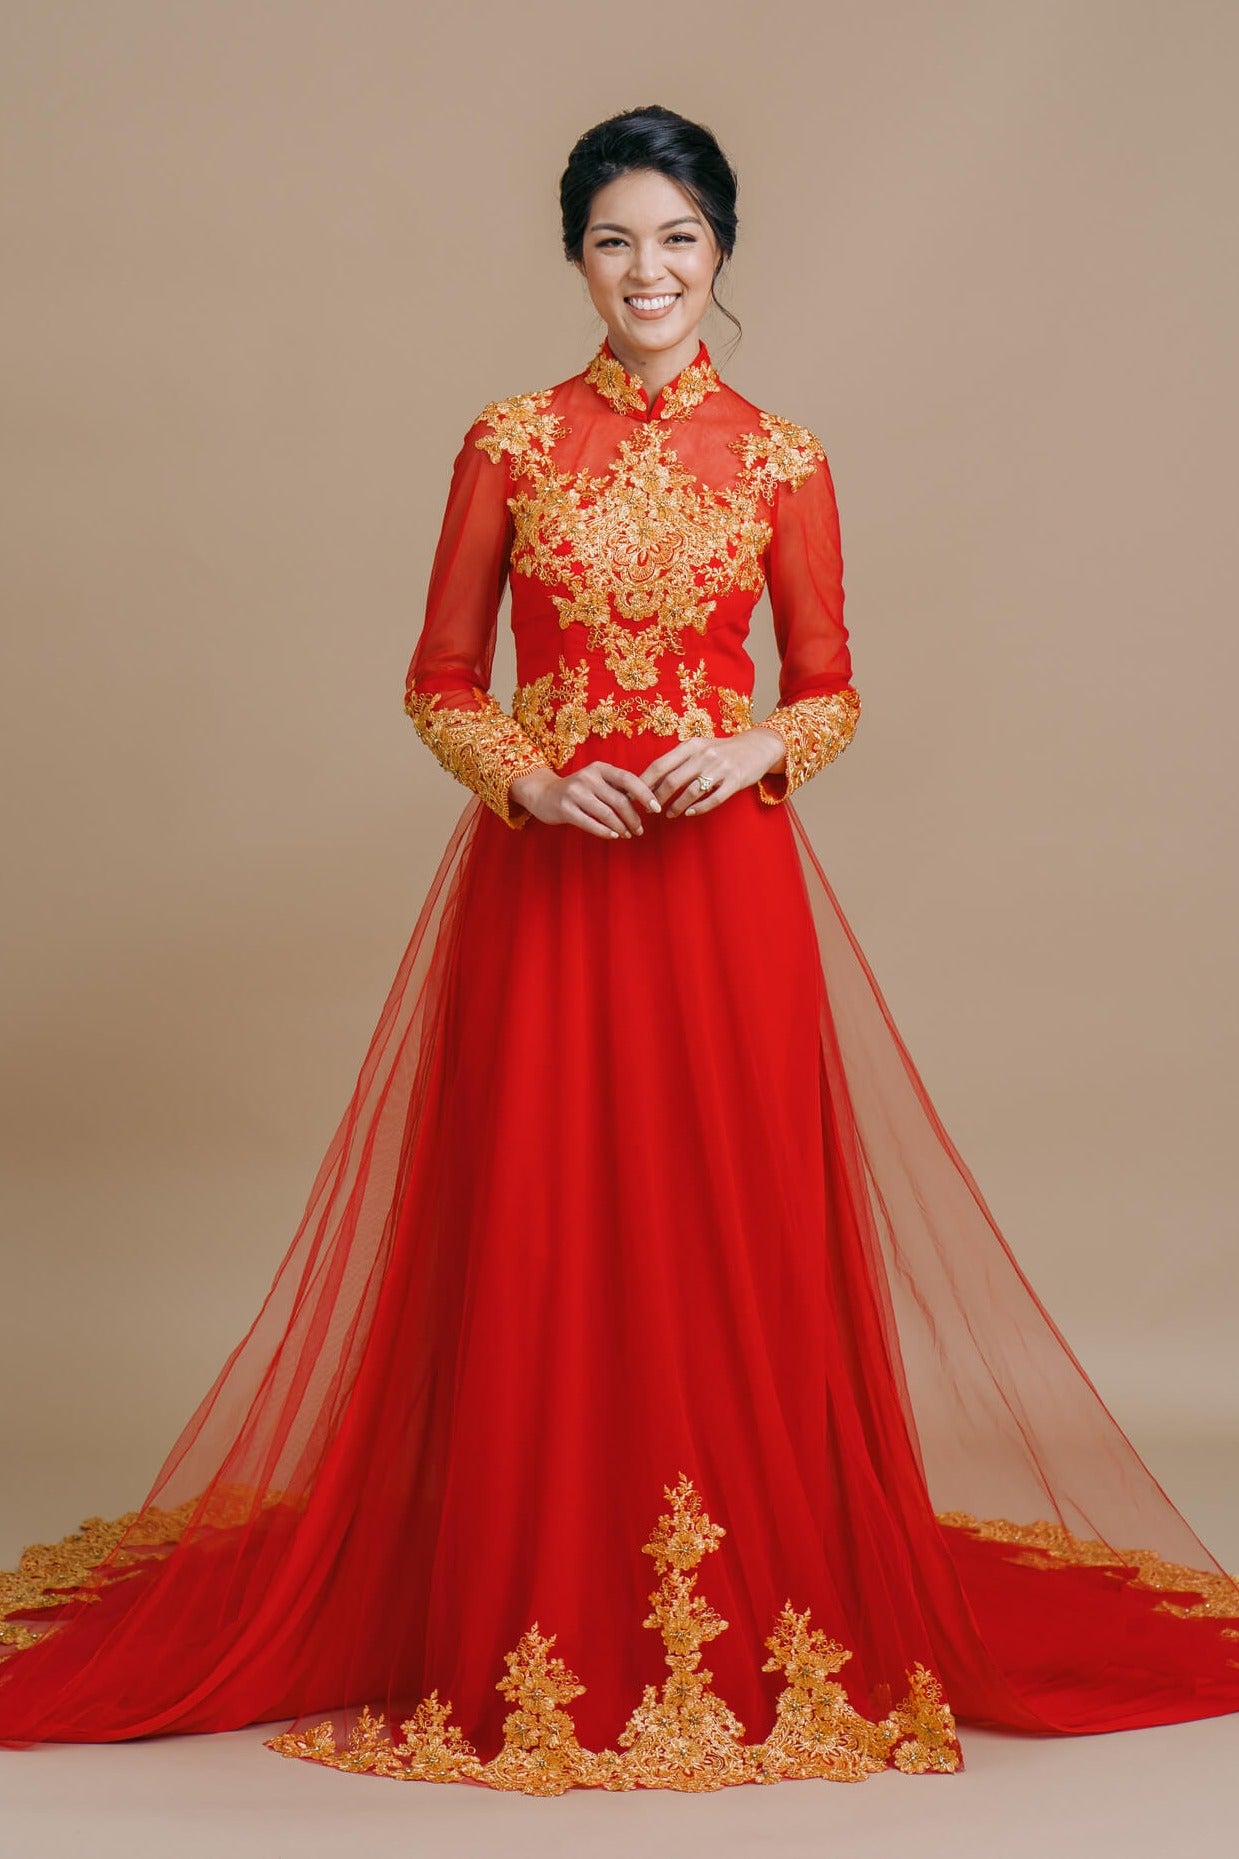 dress of vietnam